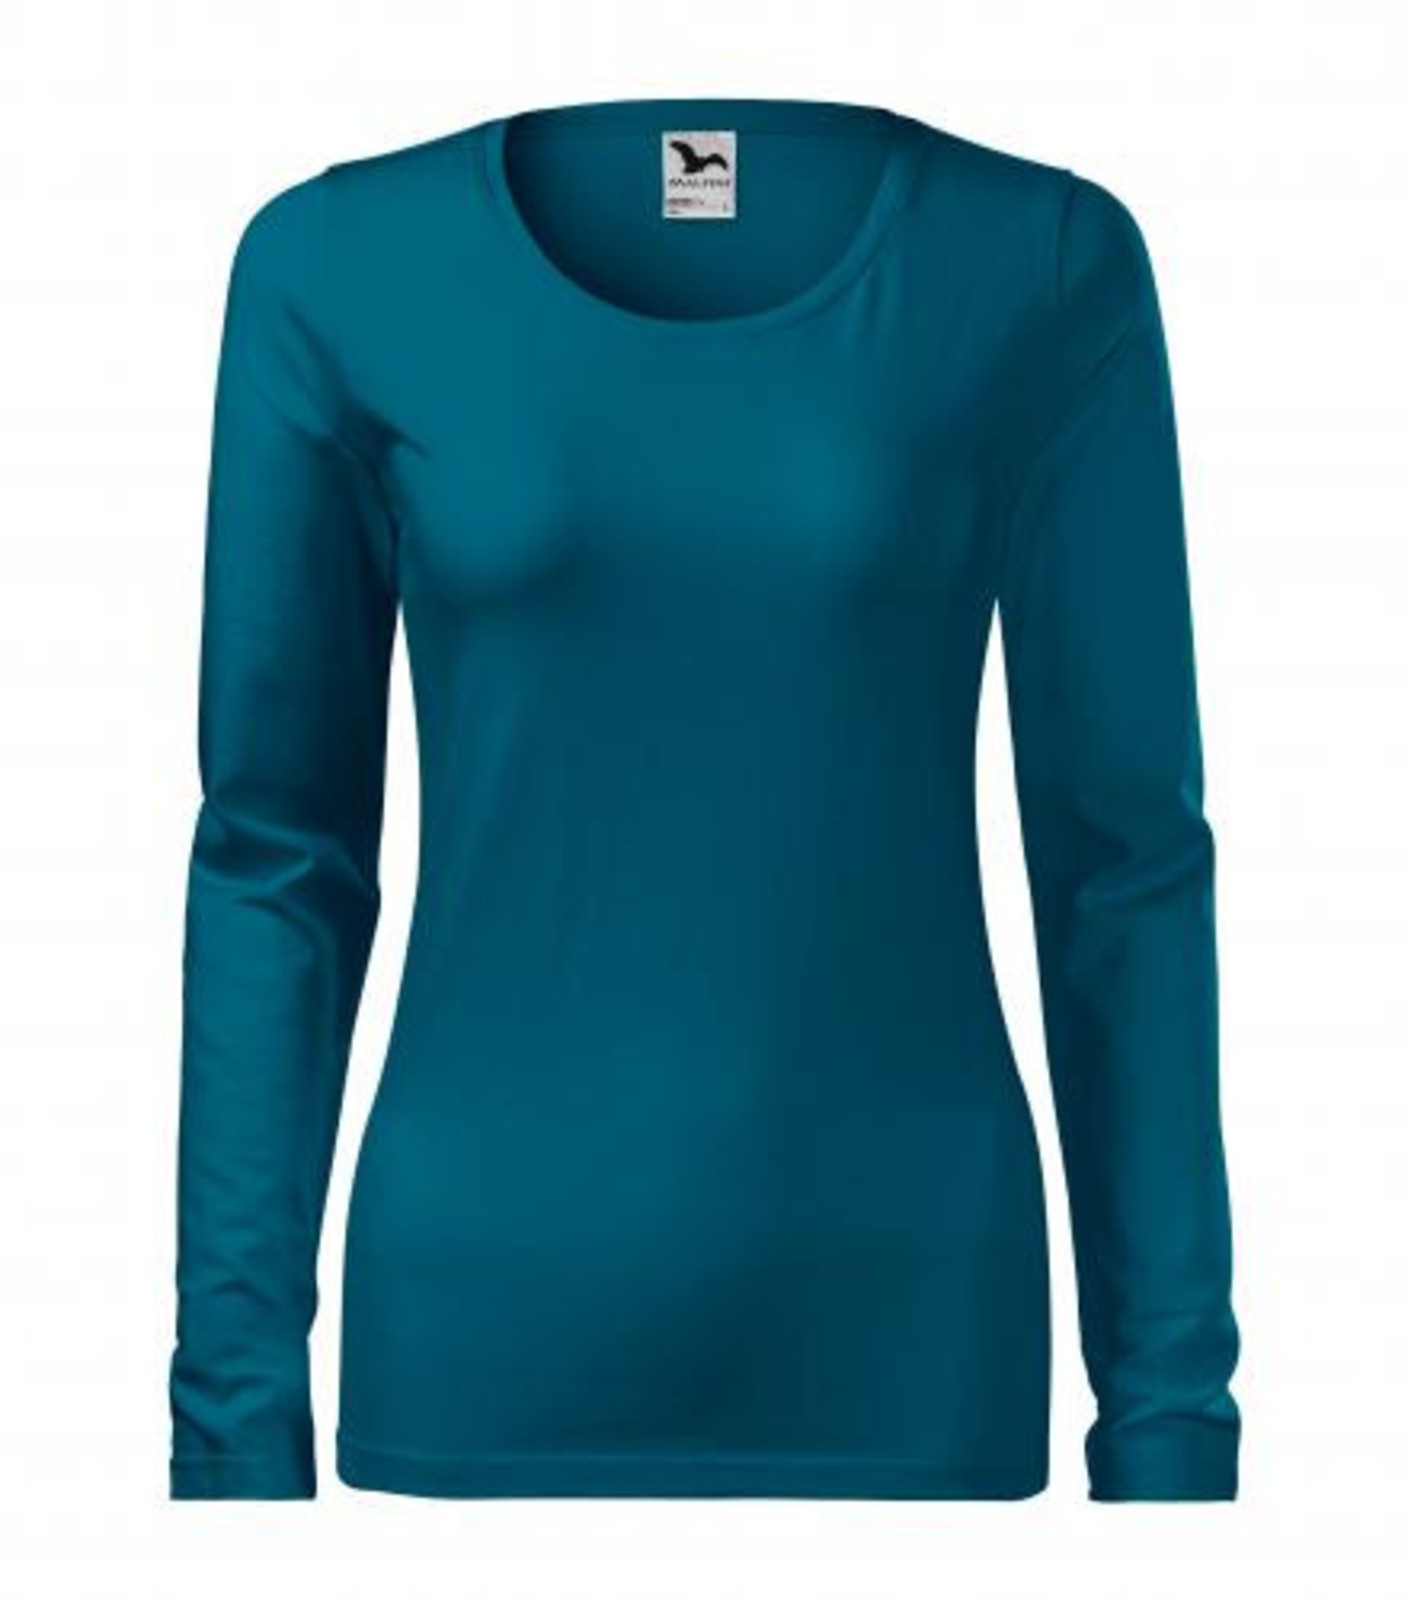 Dámske tričko s dlhým rukávom Adler Slim 139 - veľkosť: S, farba: petrolejová modrá